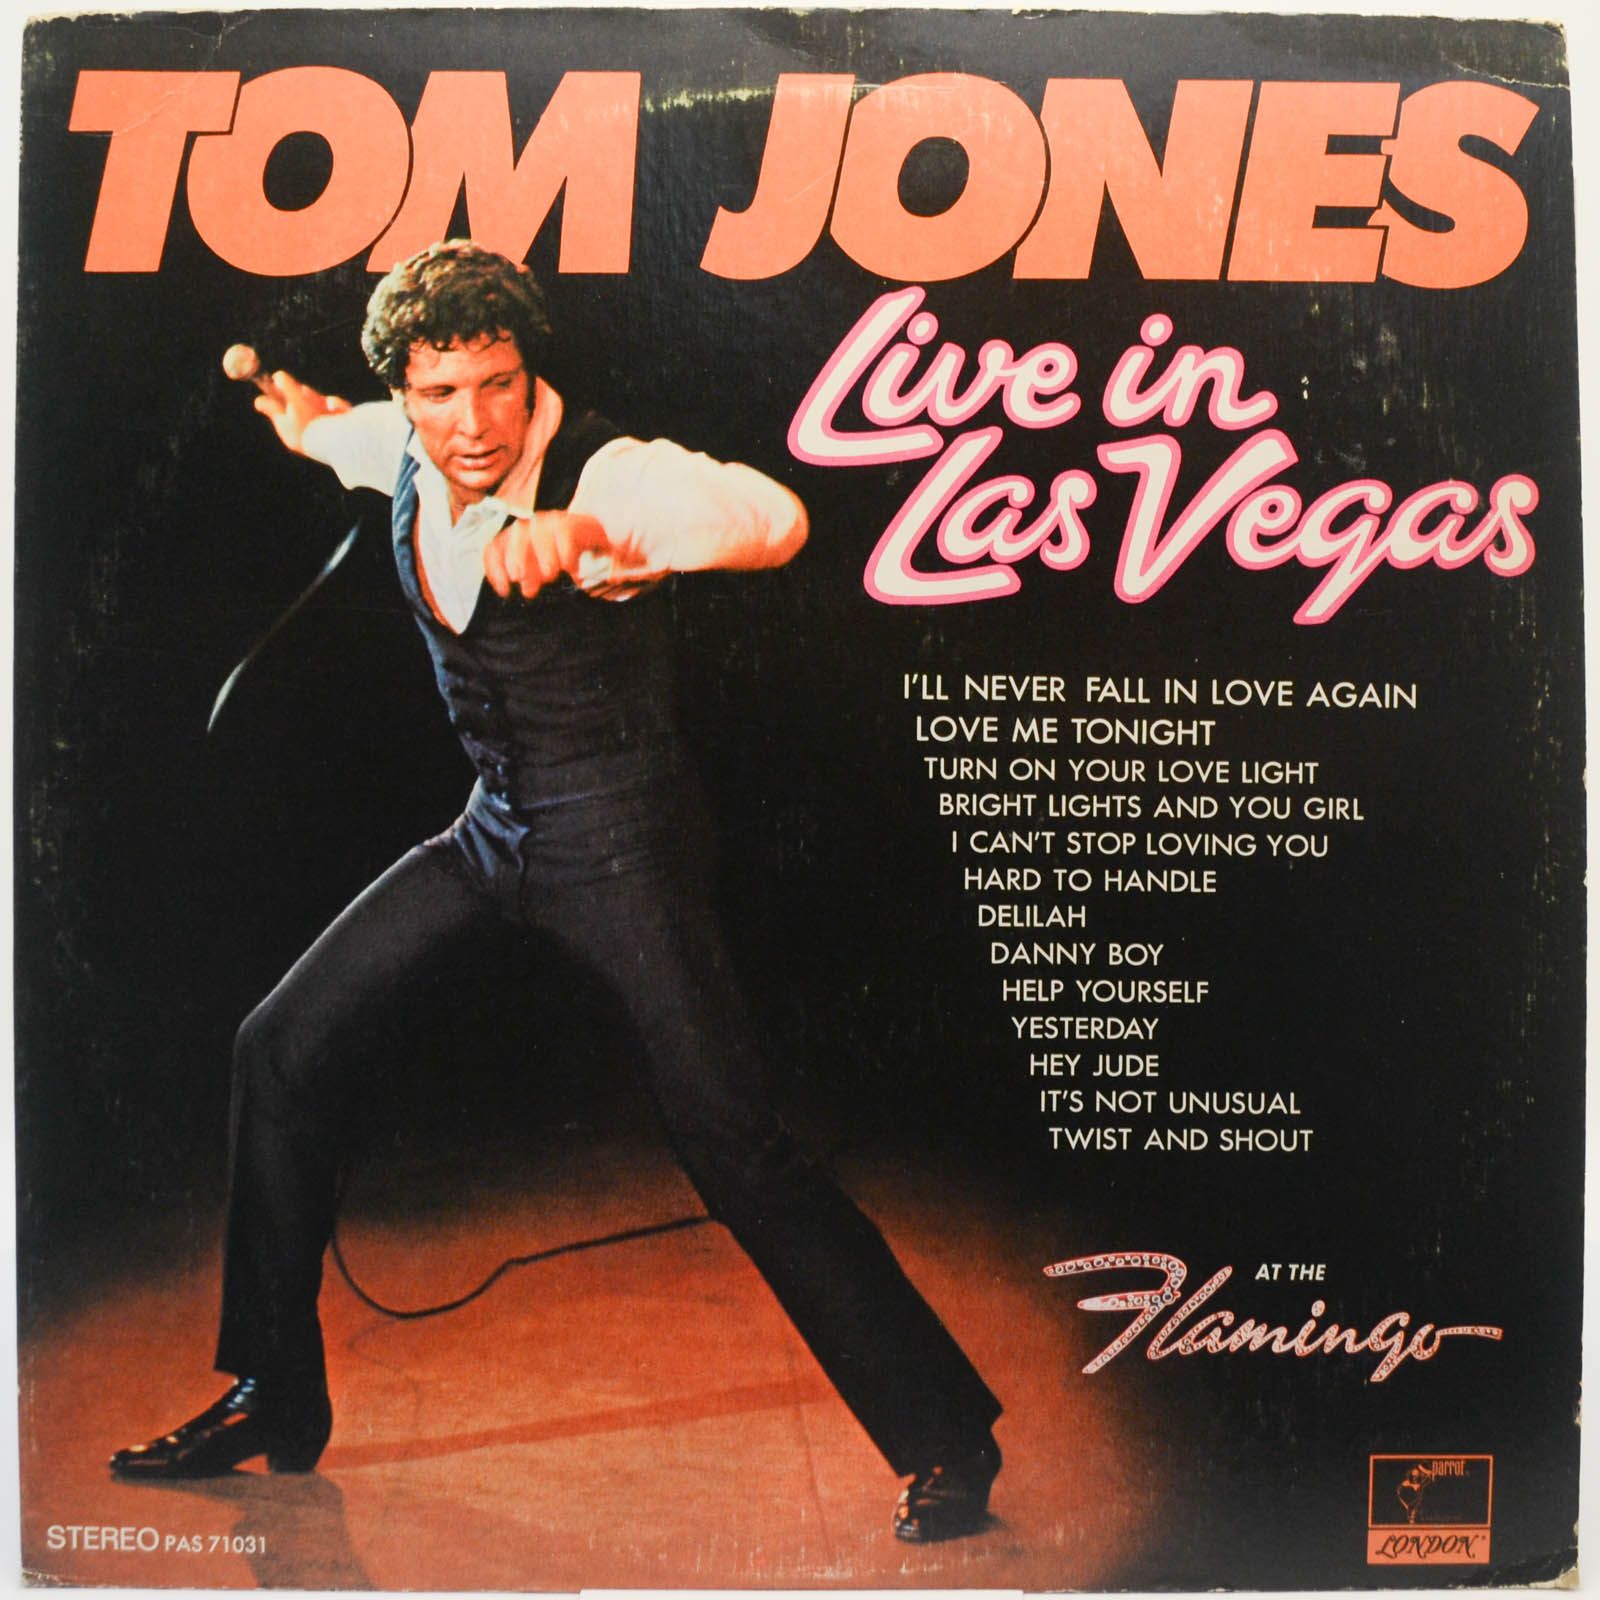 Tom Jones — Live In Las Vegas (USA), 1969